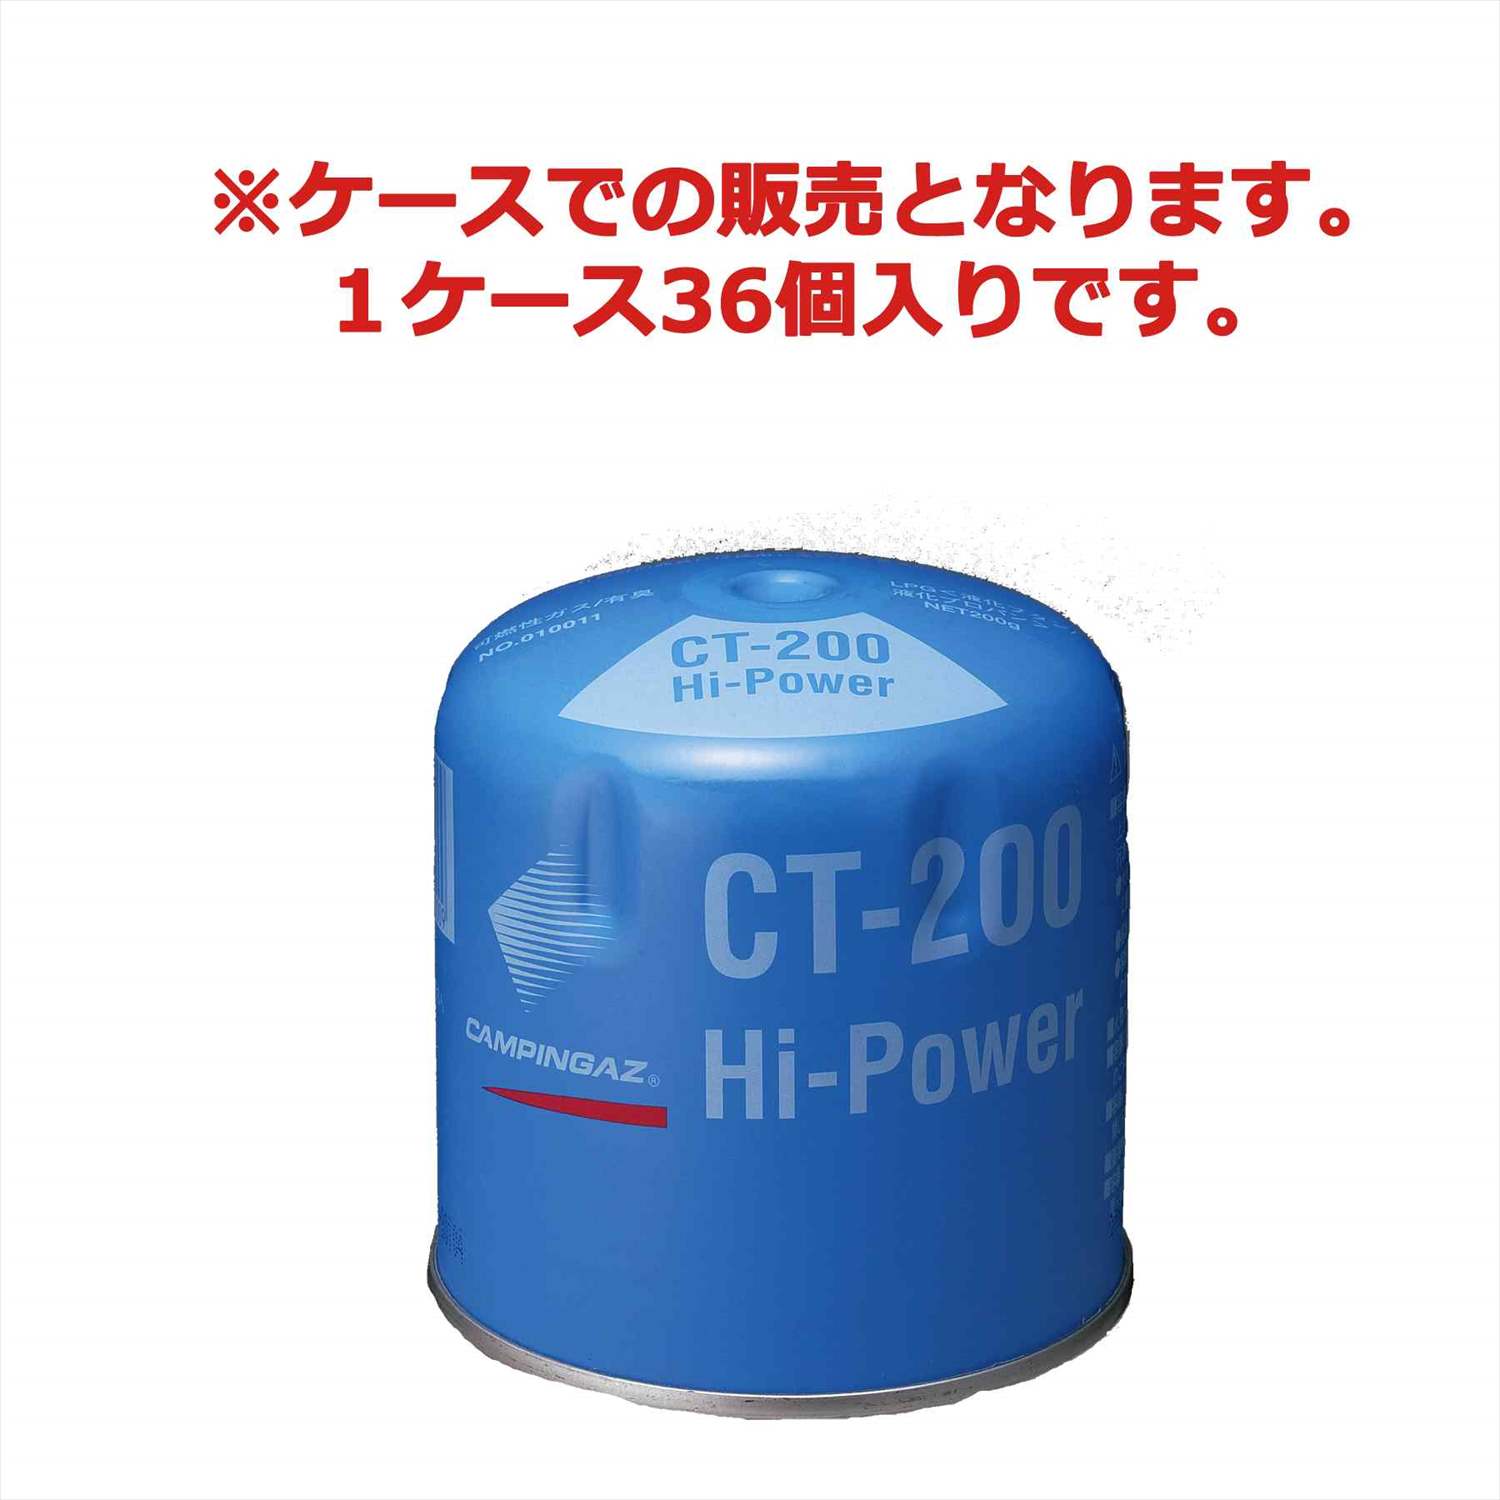 CT-200 1ケース36個入りの通販｜キャンプ用品のコールマン【公式 